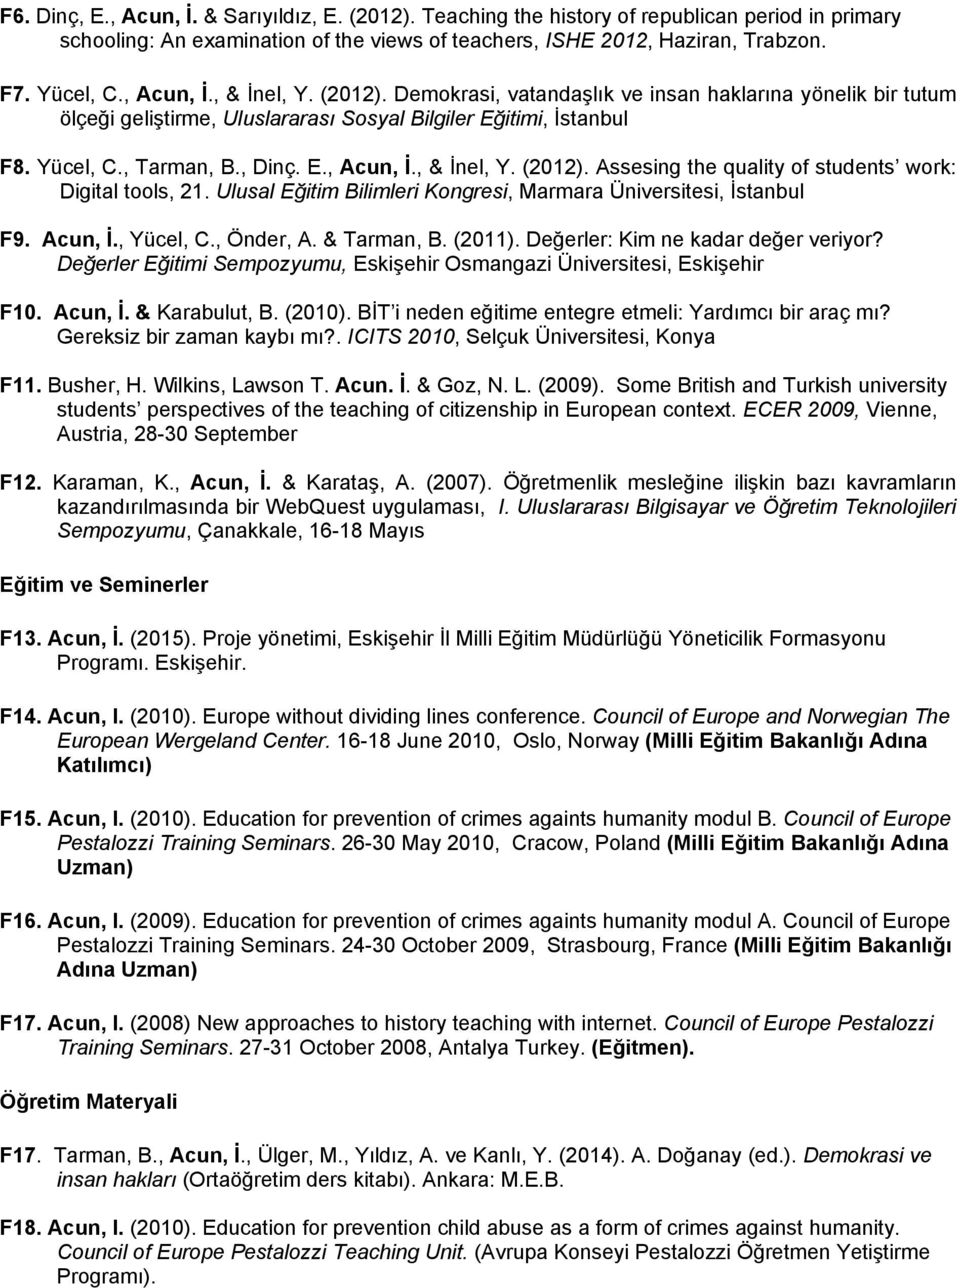 Ulusal Eğitim Bilimleri Kongresi, Marmara Üniversitesi, İstanbul F9. Acun, İ., Yücel, C., Önder, A. & Tarman, B. (2011). Değerler: Kim ne kadar değer veriyor?